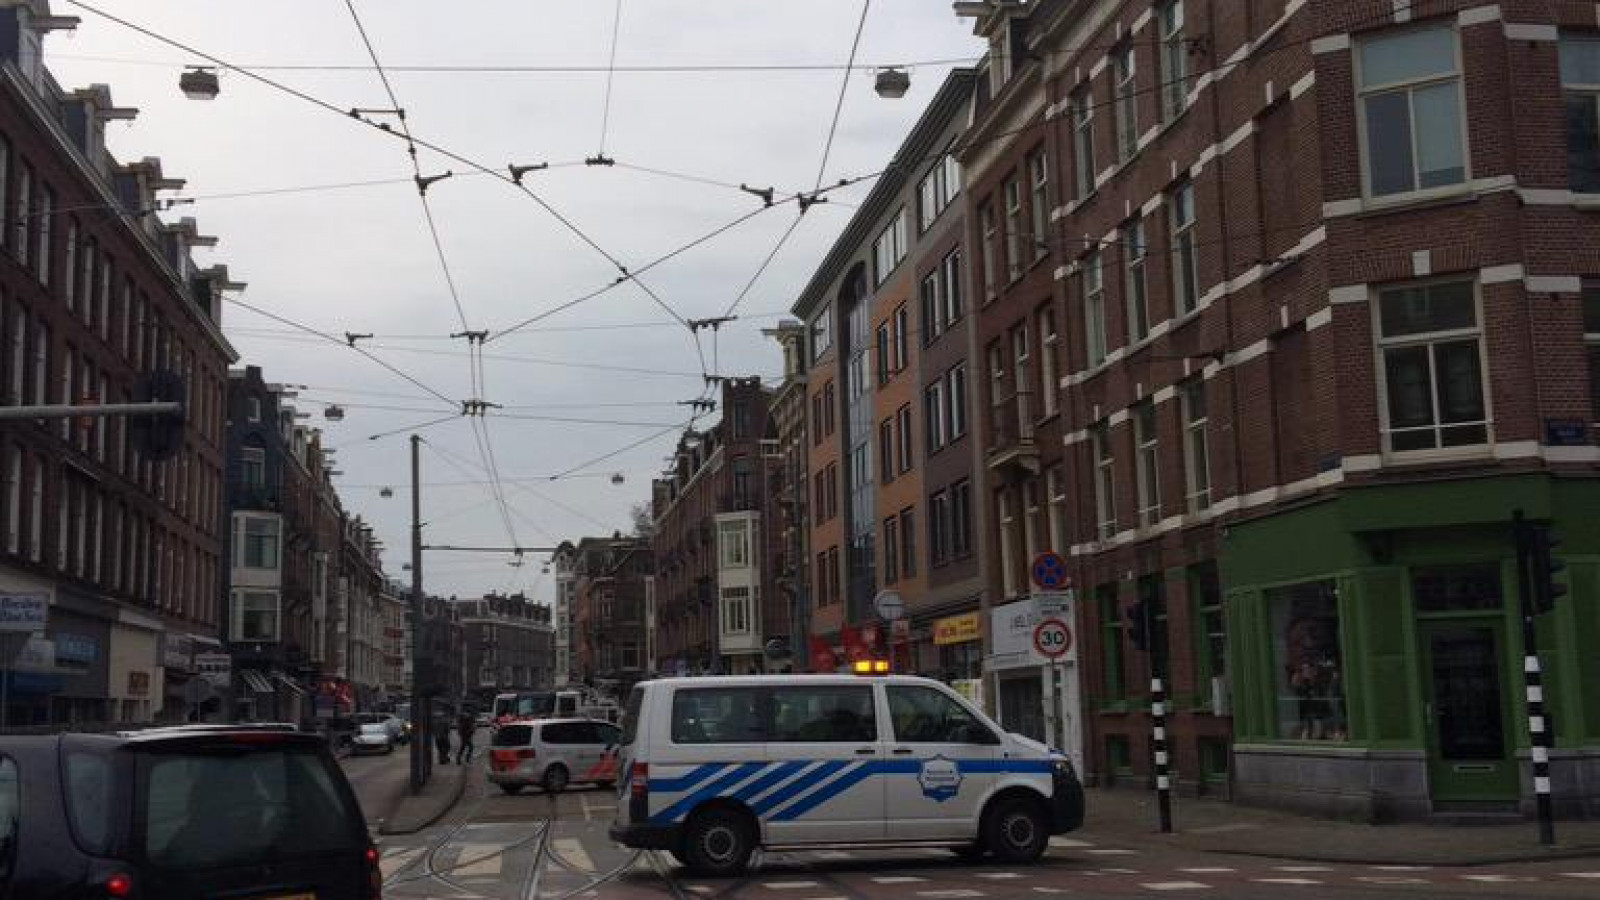 Politie crasht tegen winkelpui Van Woustraat bij achtervolging